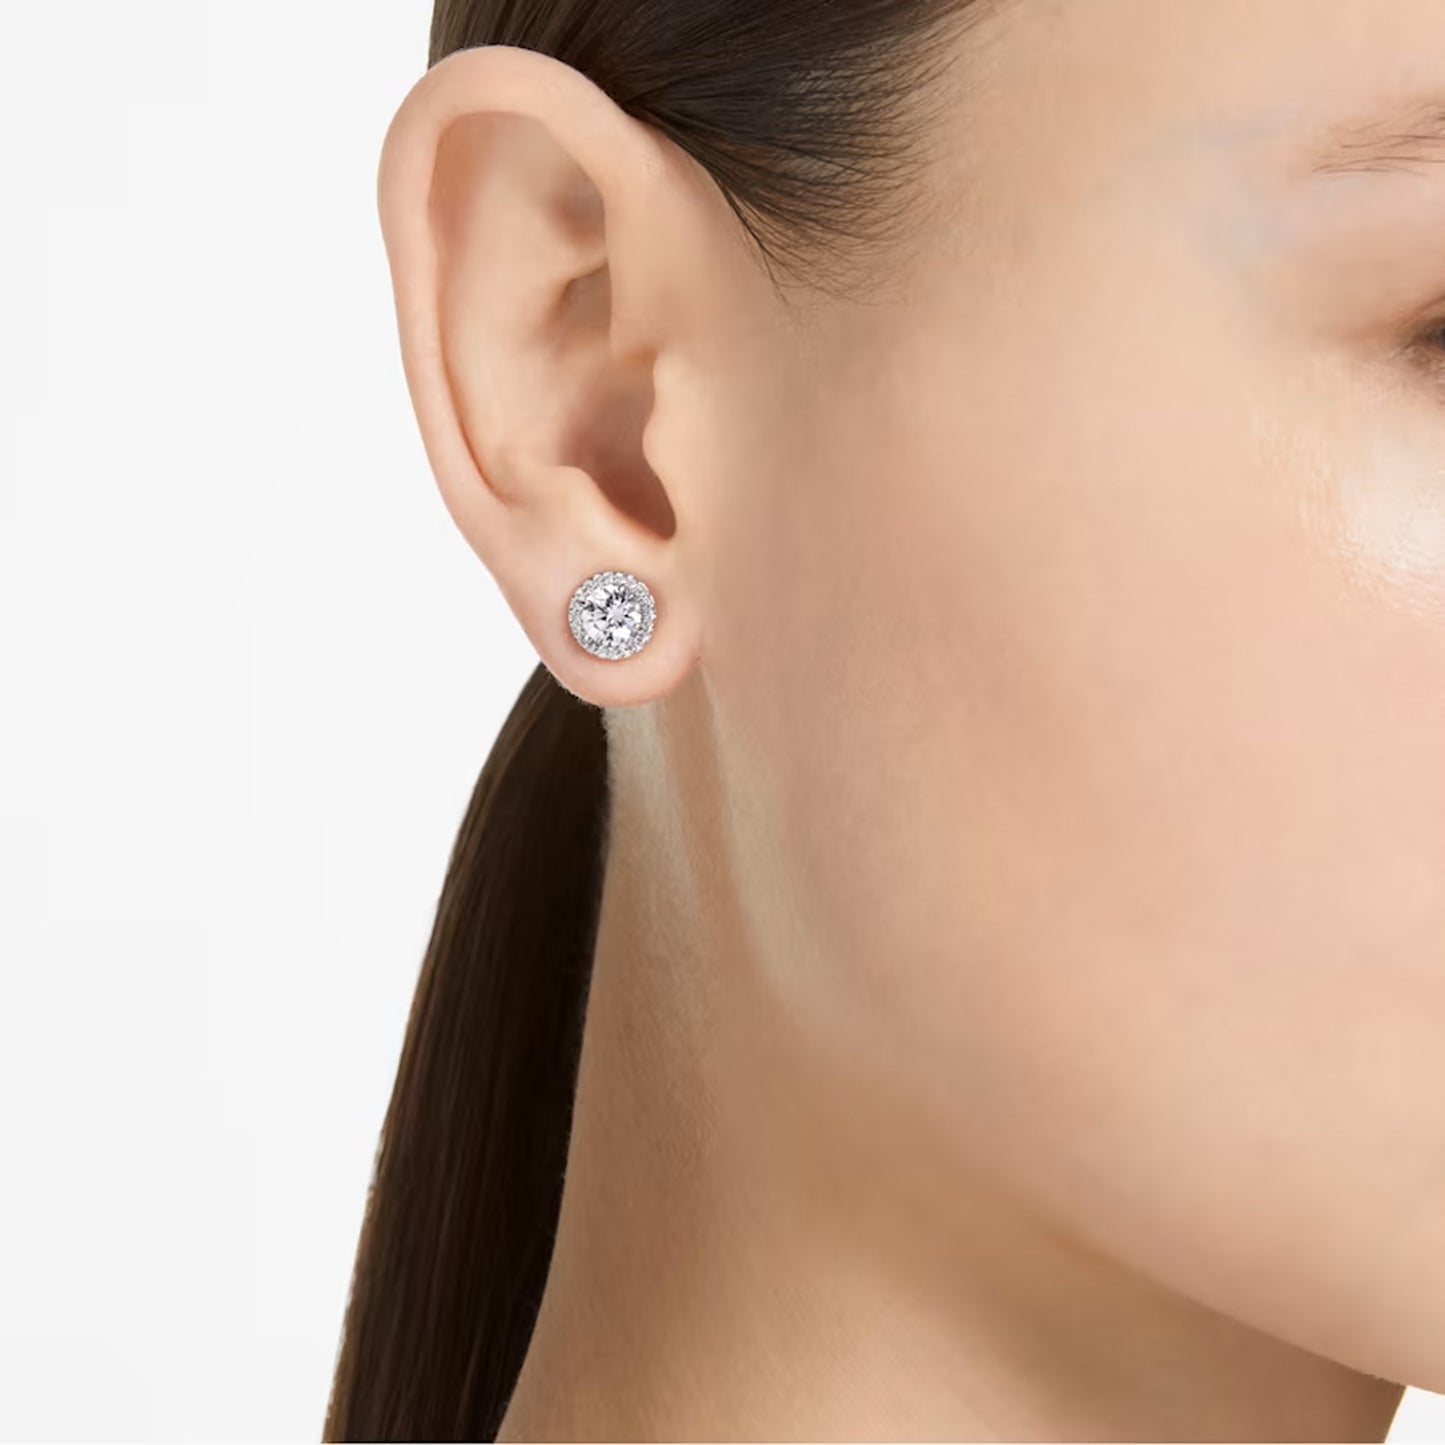 Constella stud earrings